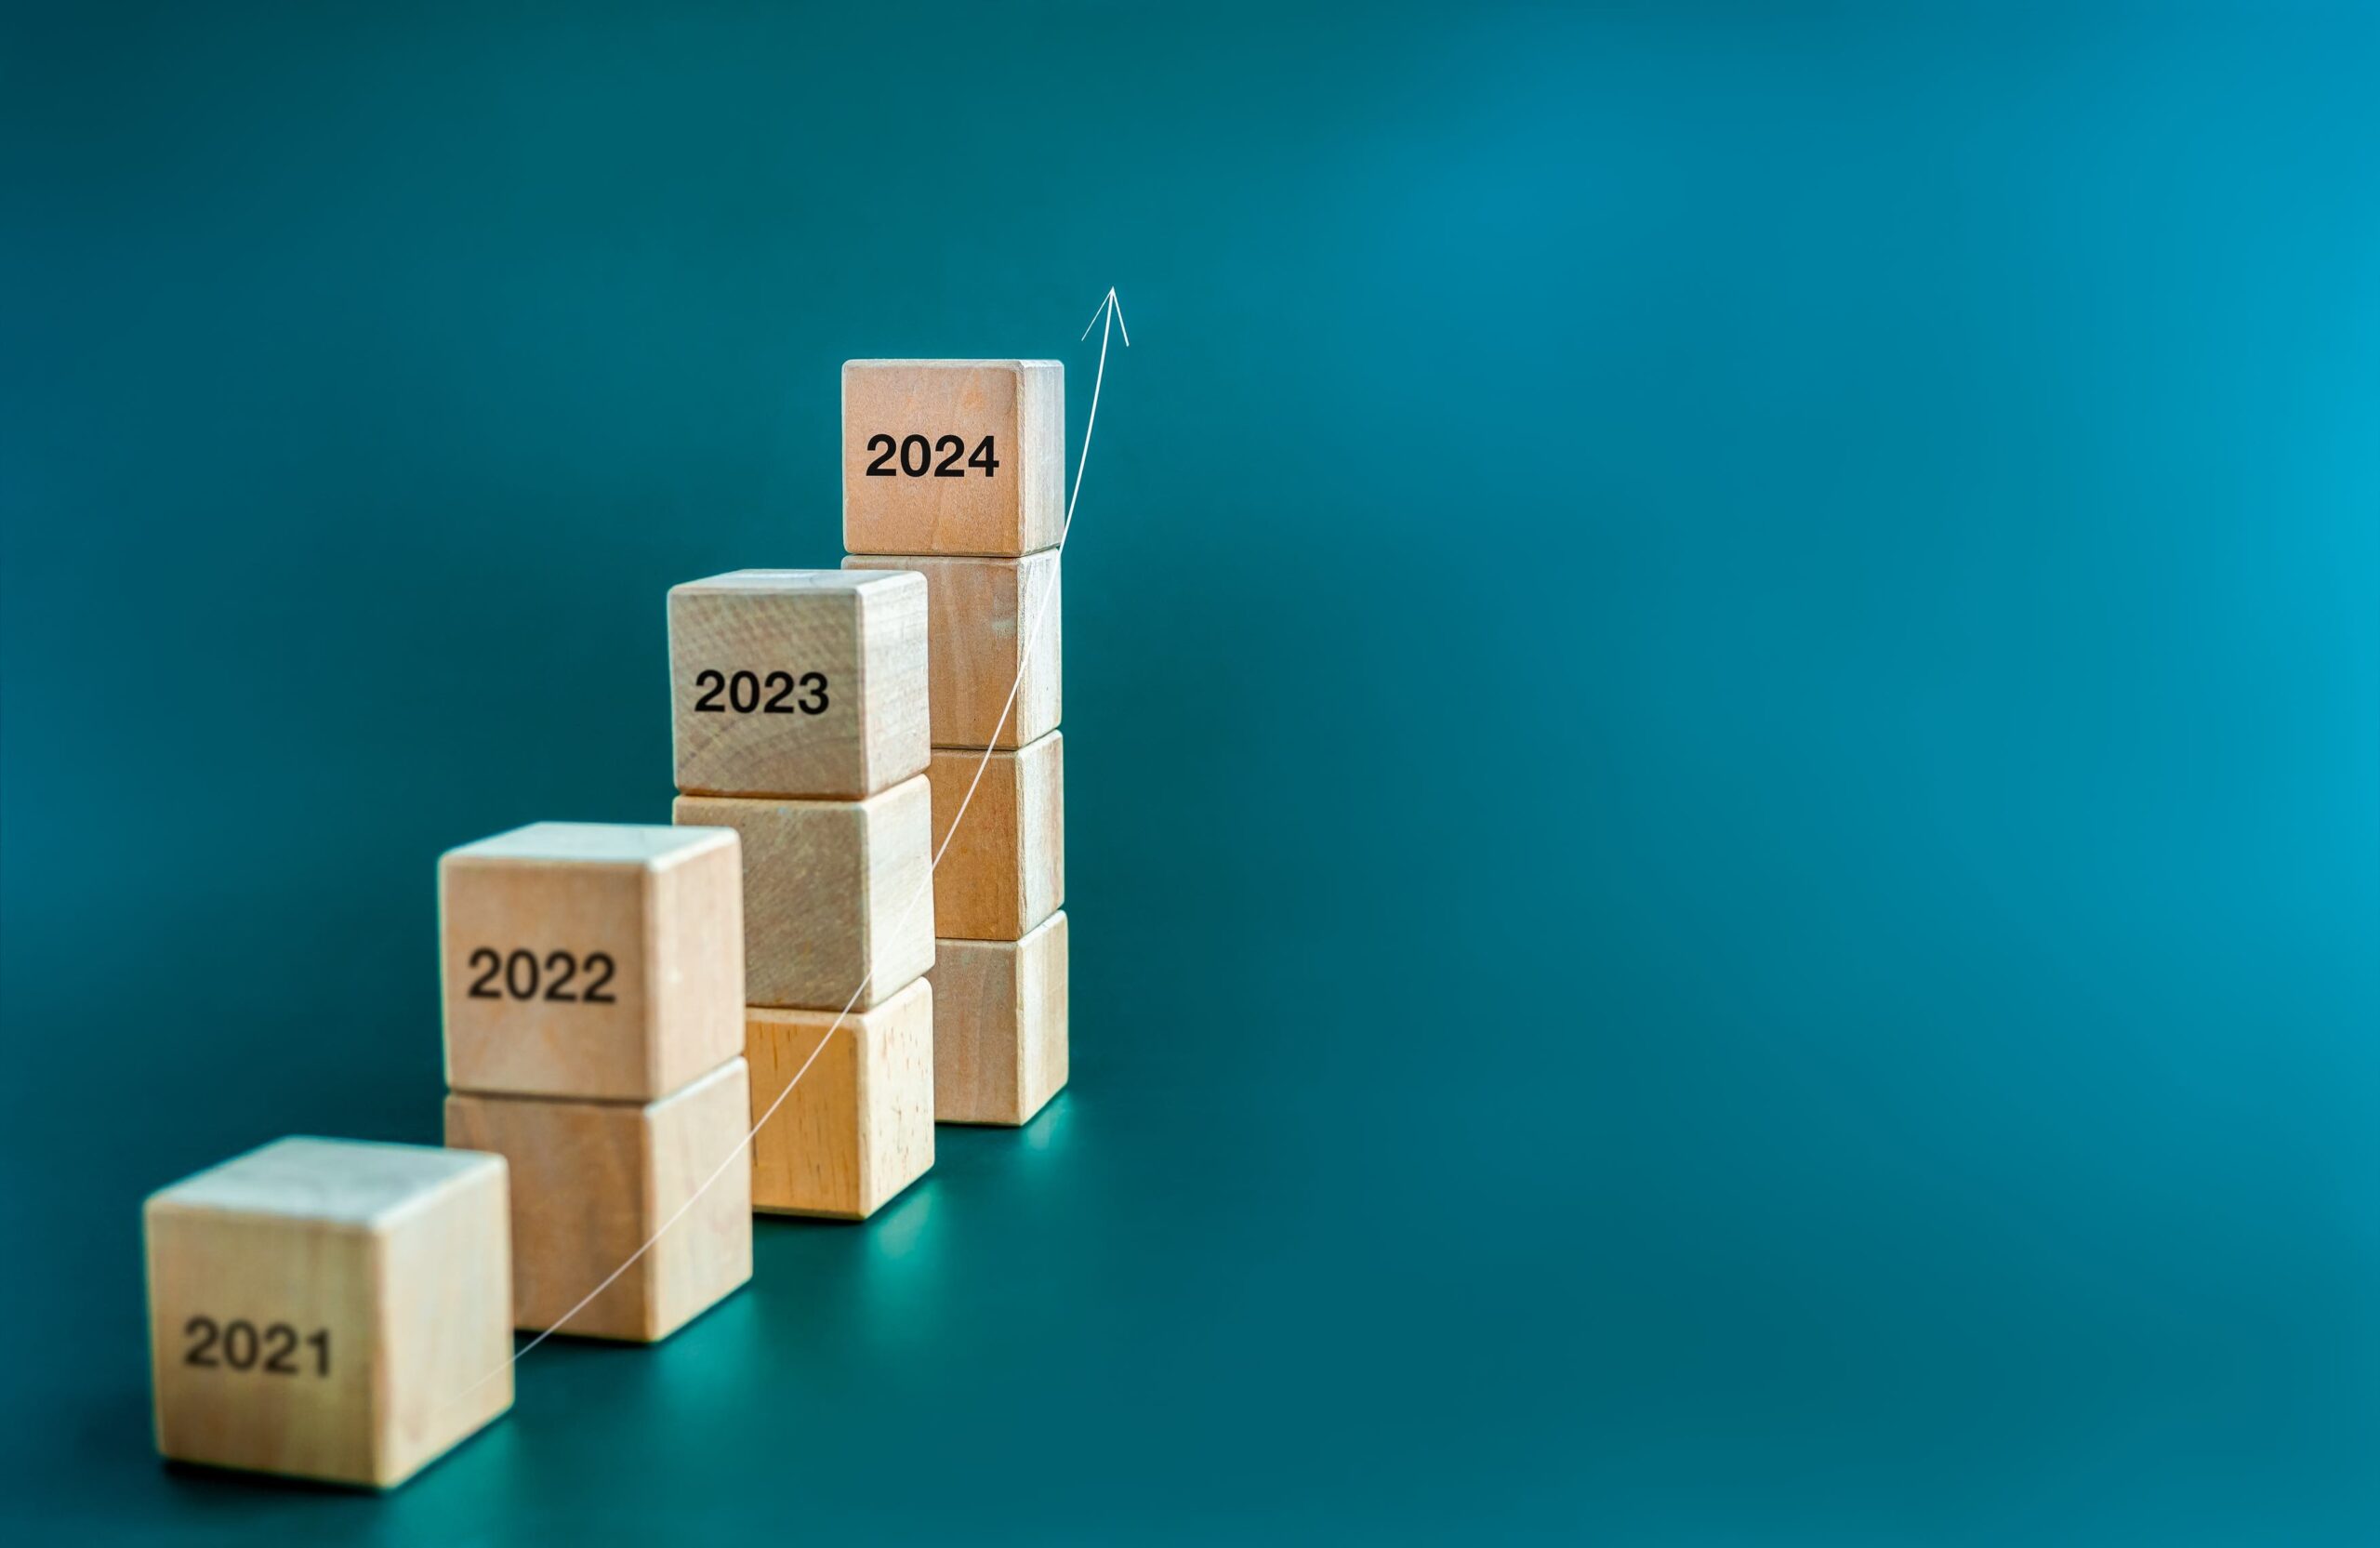 Kleine stapels blokken op oplopende hoogte met de jaartallen 2021-2024 erin gegraveerd om het verstrijken van de tijd aan te geven.